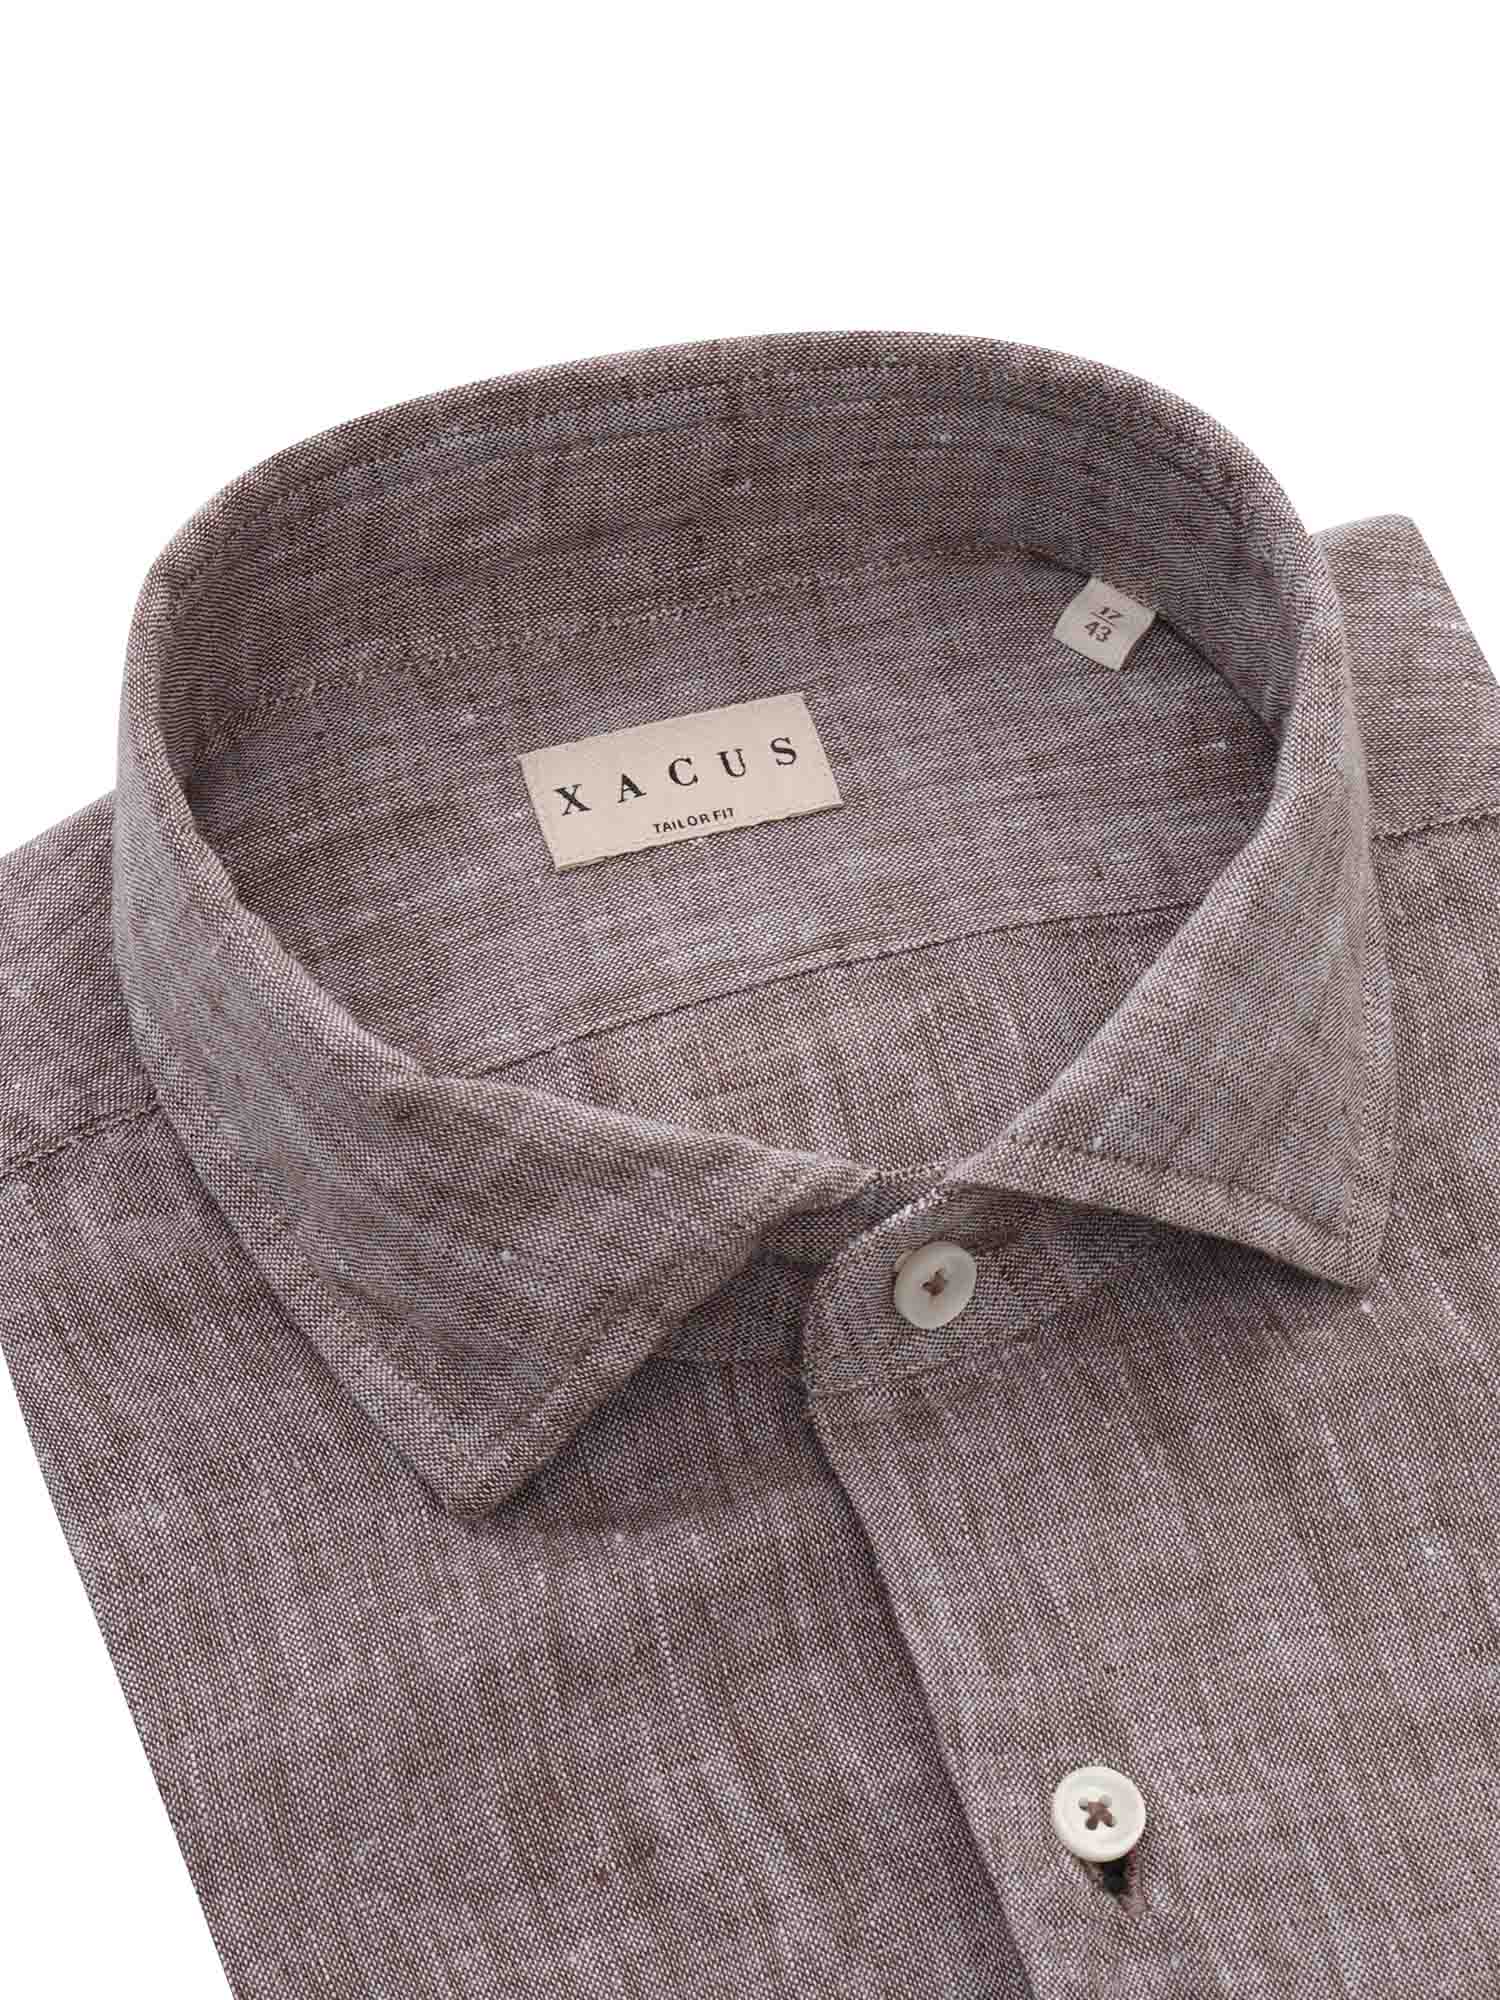 Shop Xacus Brown Linen Shirt